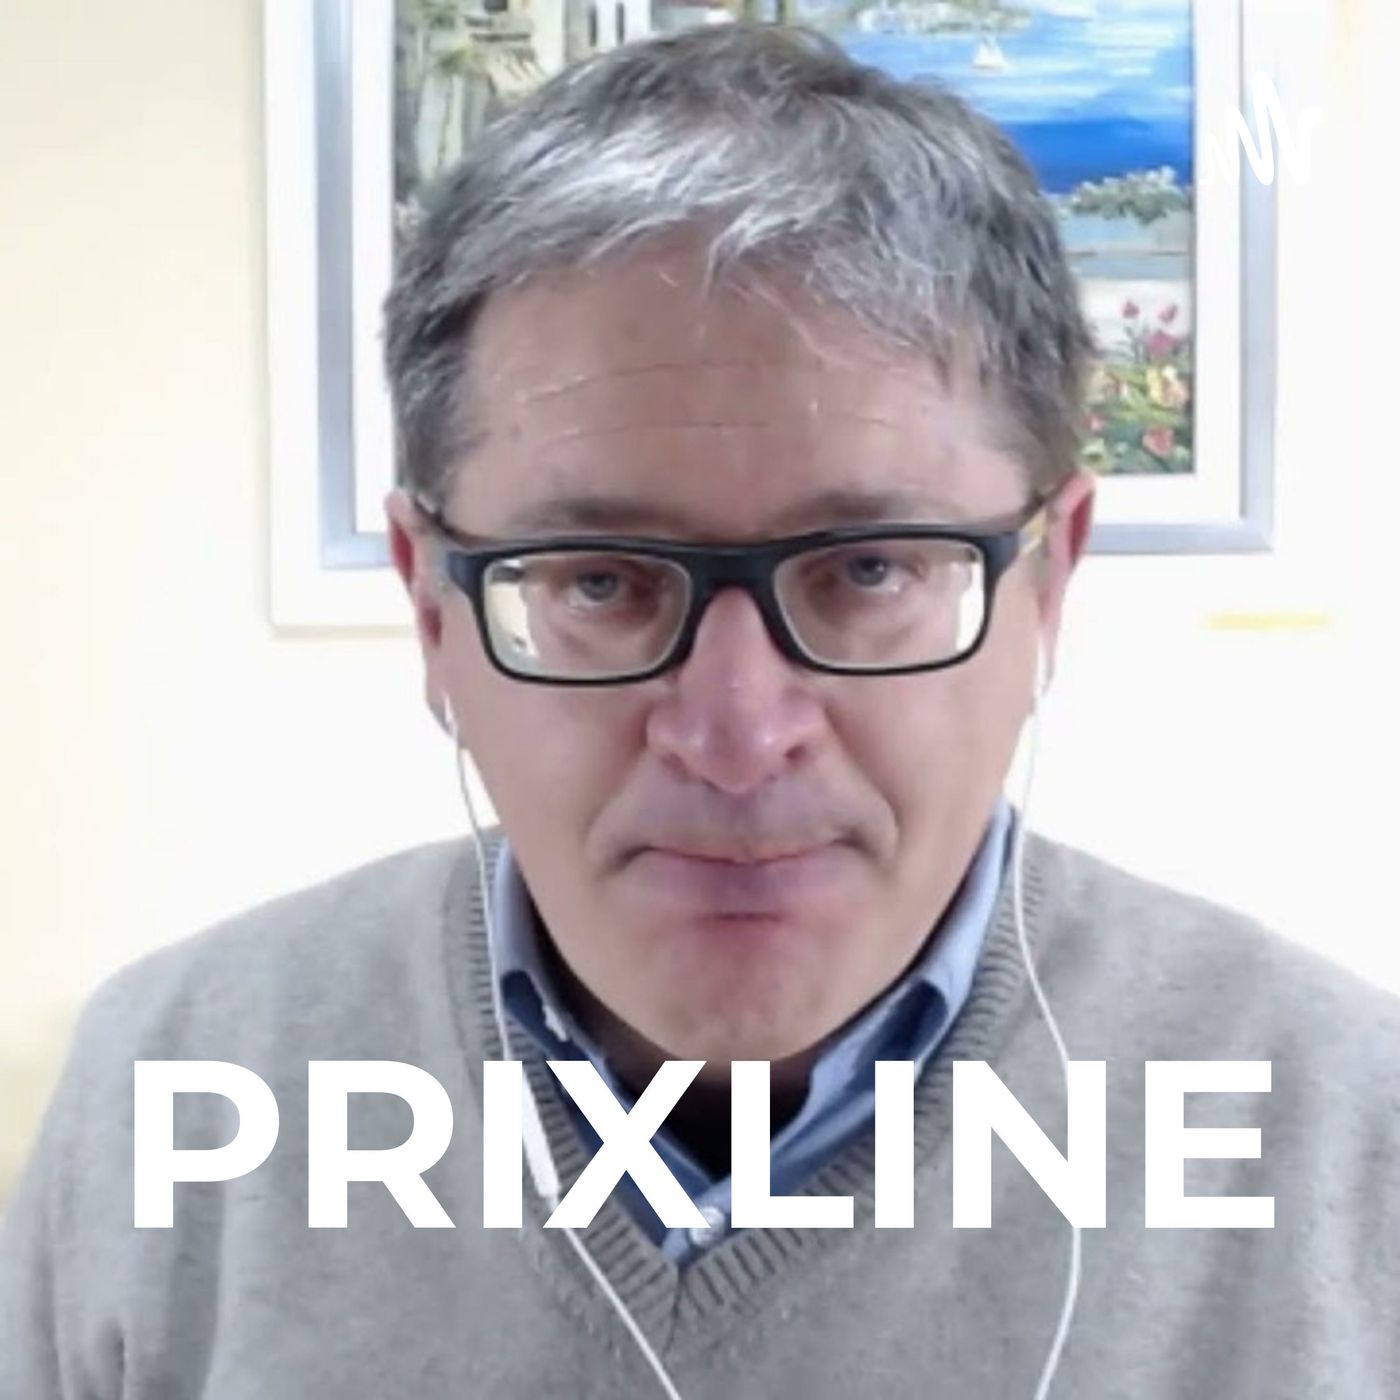 PRIXLINE ✅ La SOLUCIÓN al Arraigo Laboral con Asilo Interpuesto